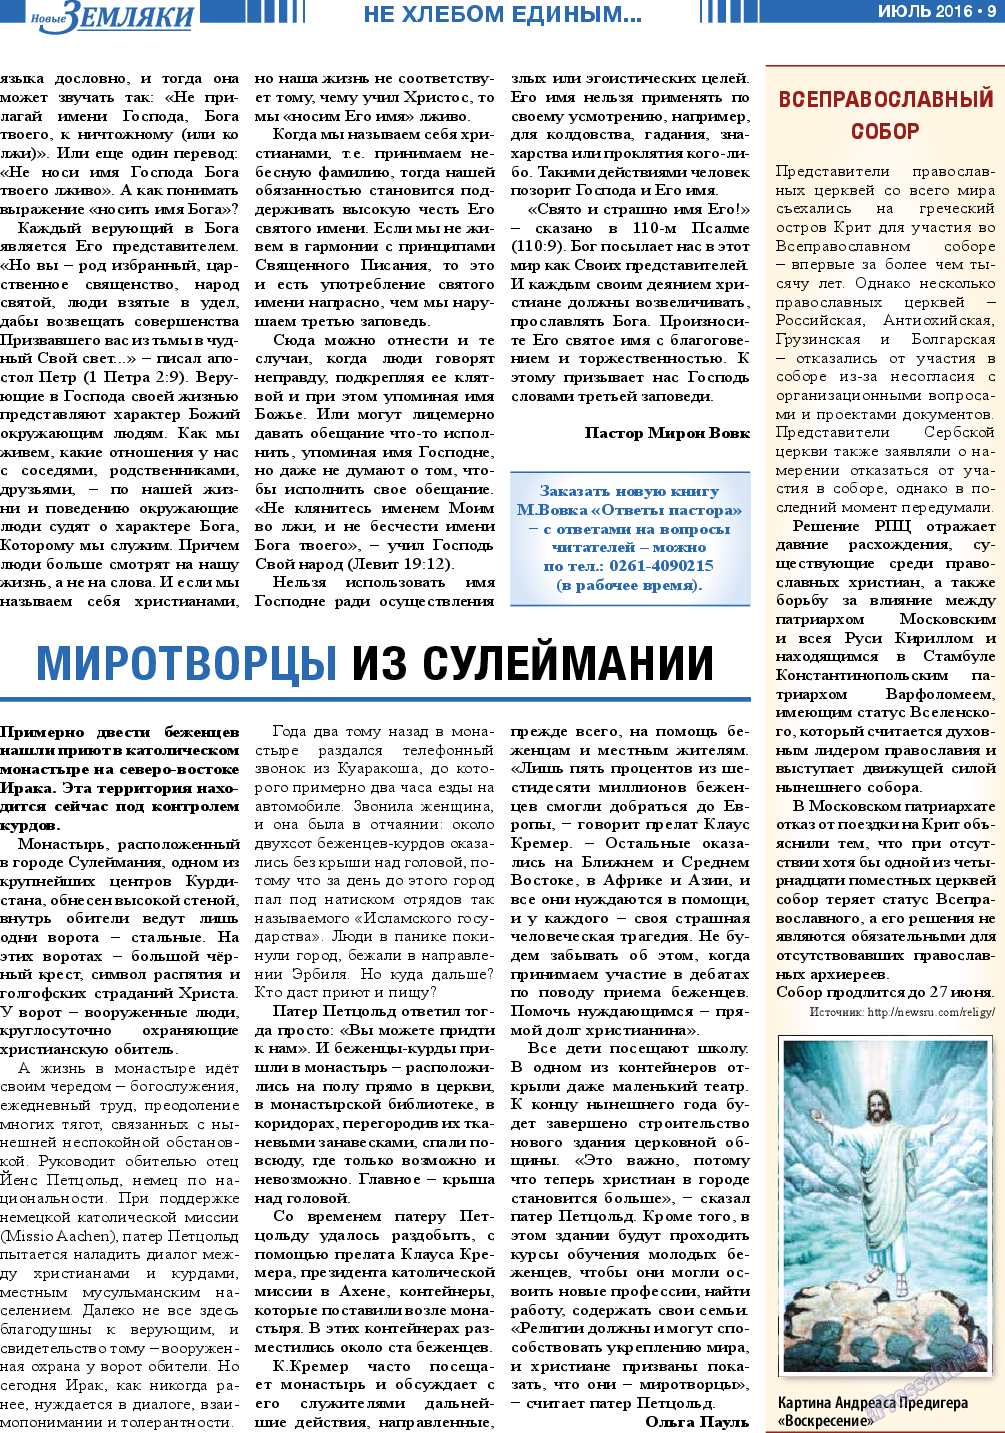 Новые Земляки (газета). 2016 год, номер 7, стр. 9